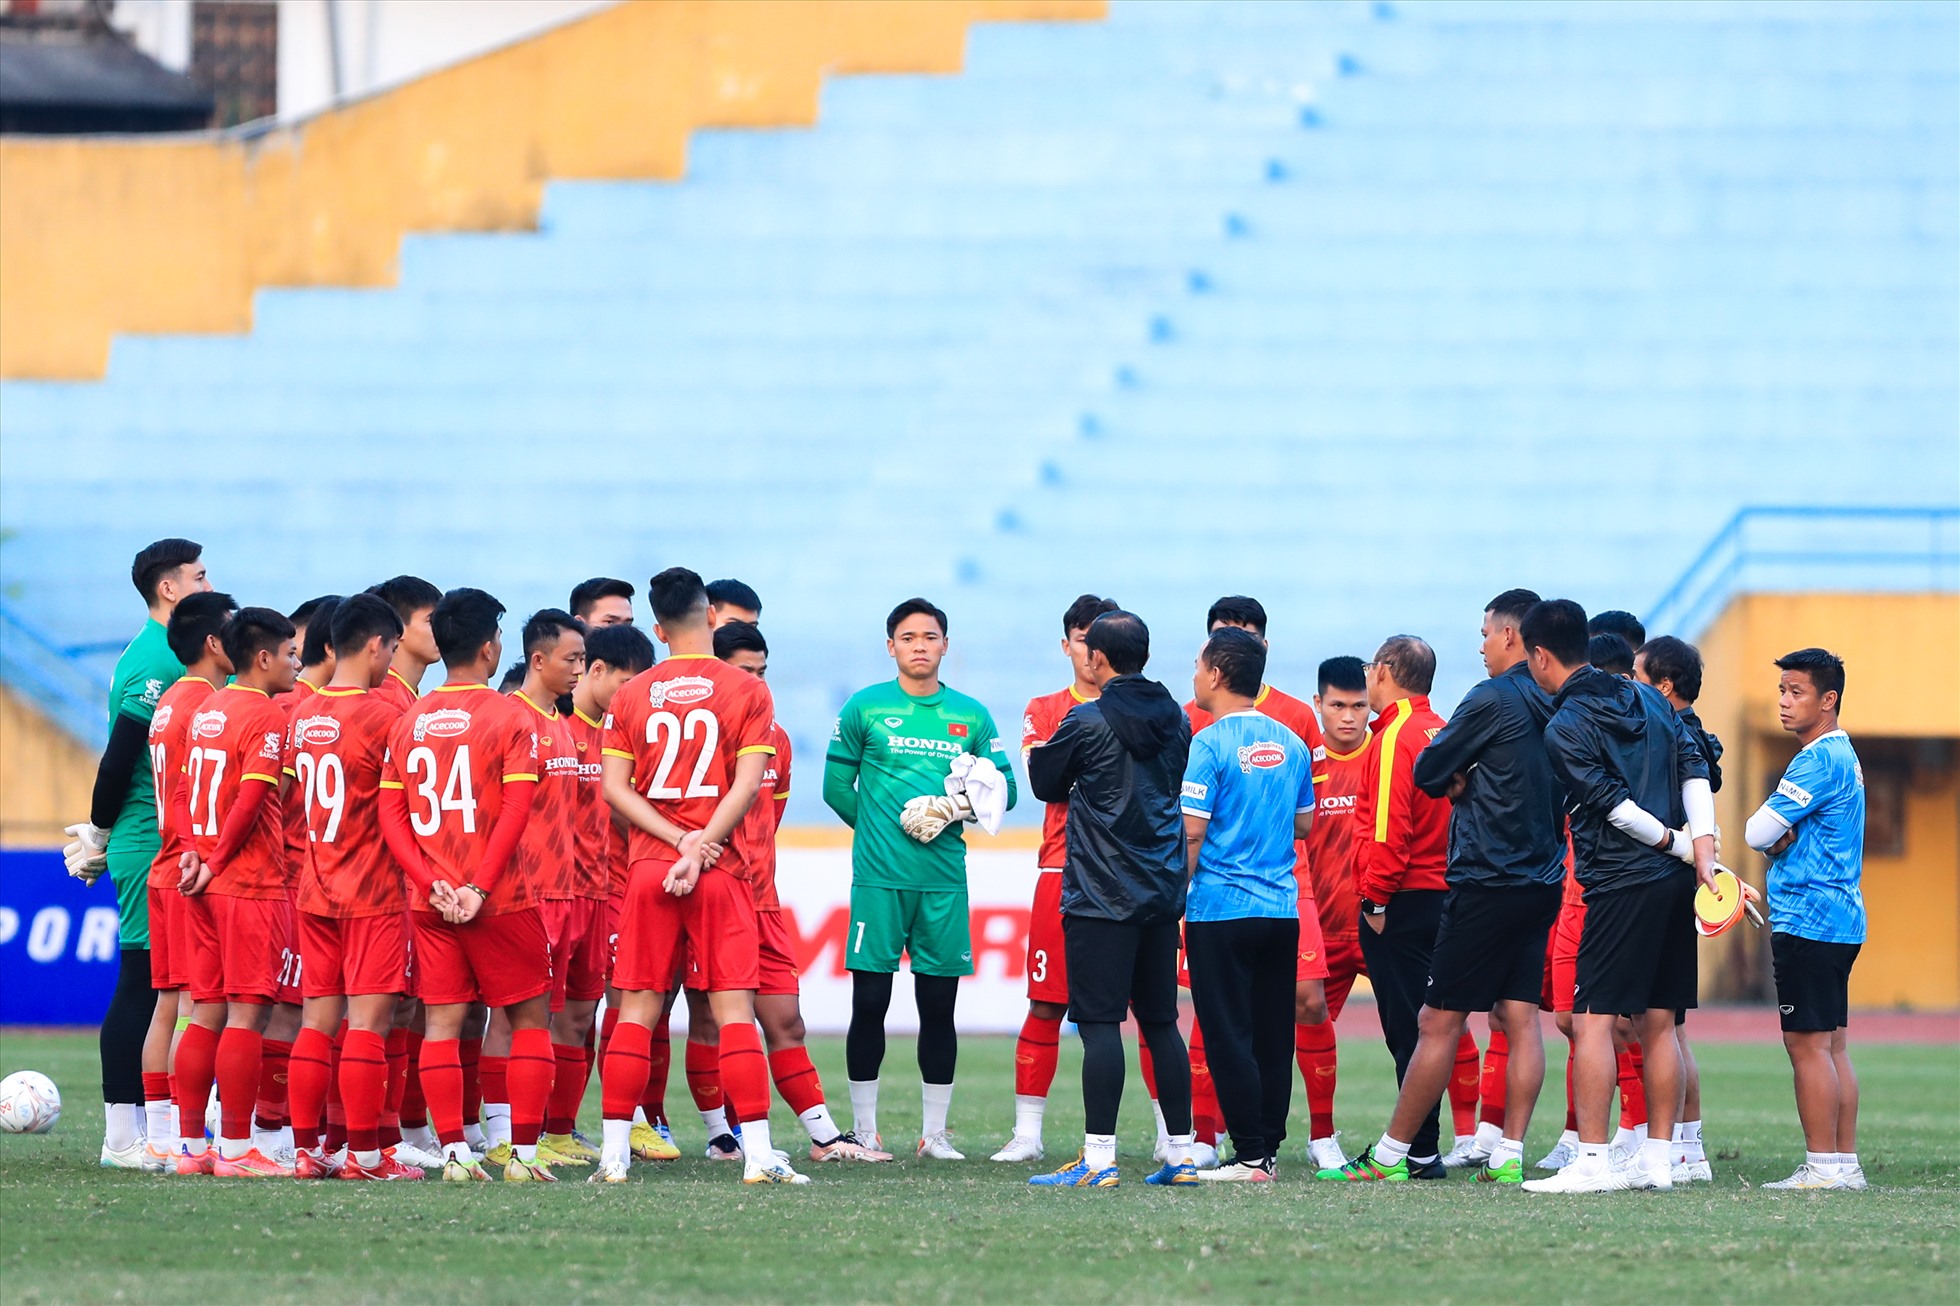 Chiều nay (13.12), đội tuyển Việt Nam đã có buổi tập làm quen sân Hàng Đẫy chuẩn bị cho trận đấu gặp đội tuyển Phlippines diễn ra tối mai (14.12).